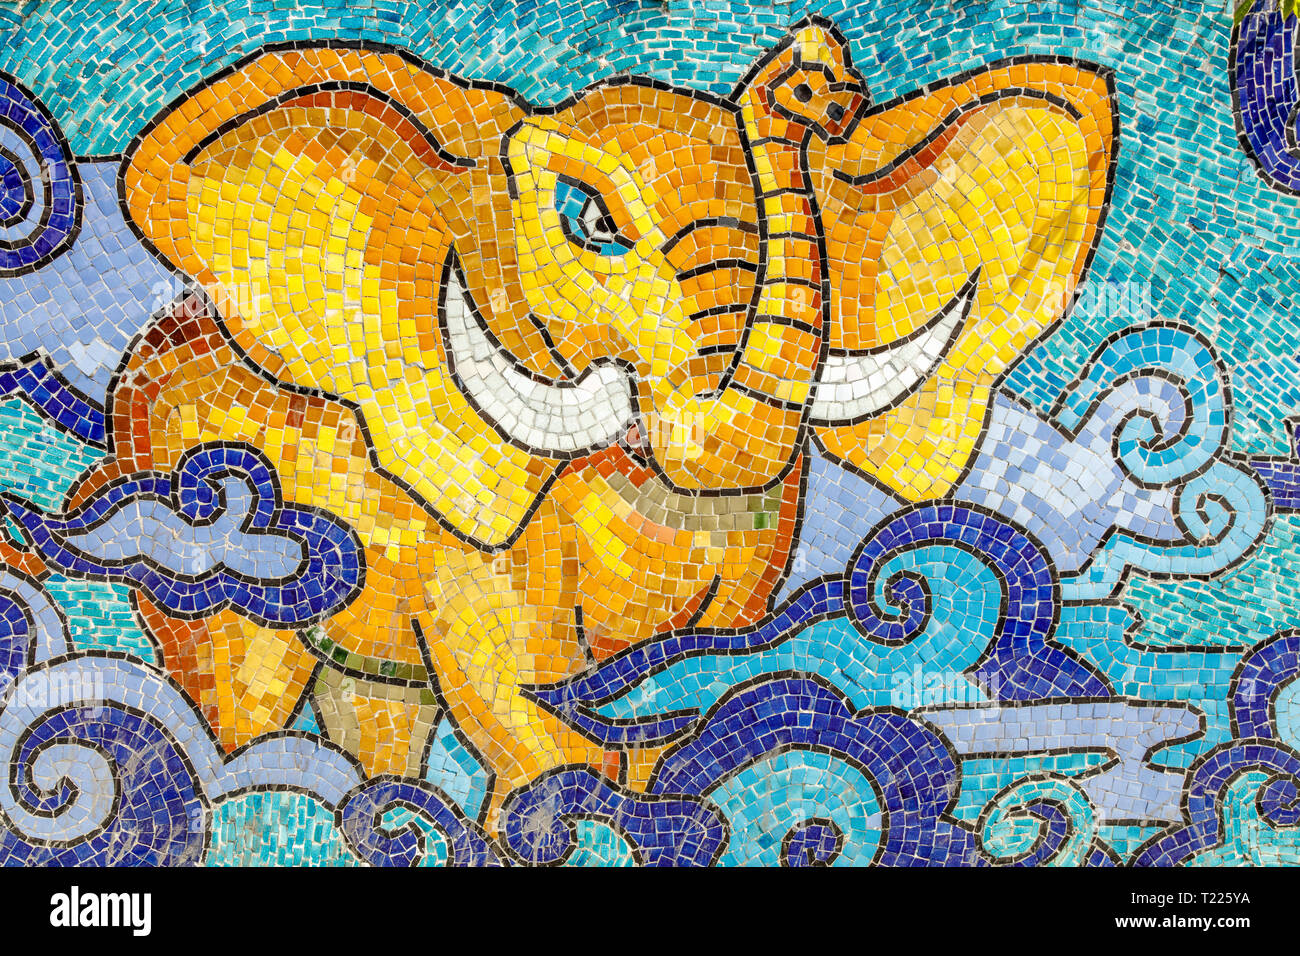 Hanoi Keramik Mosaik Wandbild oder Hanoi Keramik Straße. Vietnam. Die Bekämpfung der Elefant. Die längste Keramische Wand in der Welt, Guinness Rekord. Stockfoto